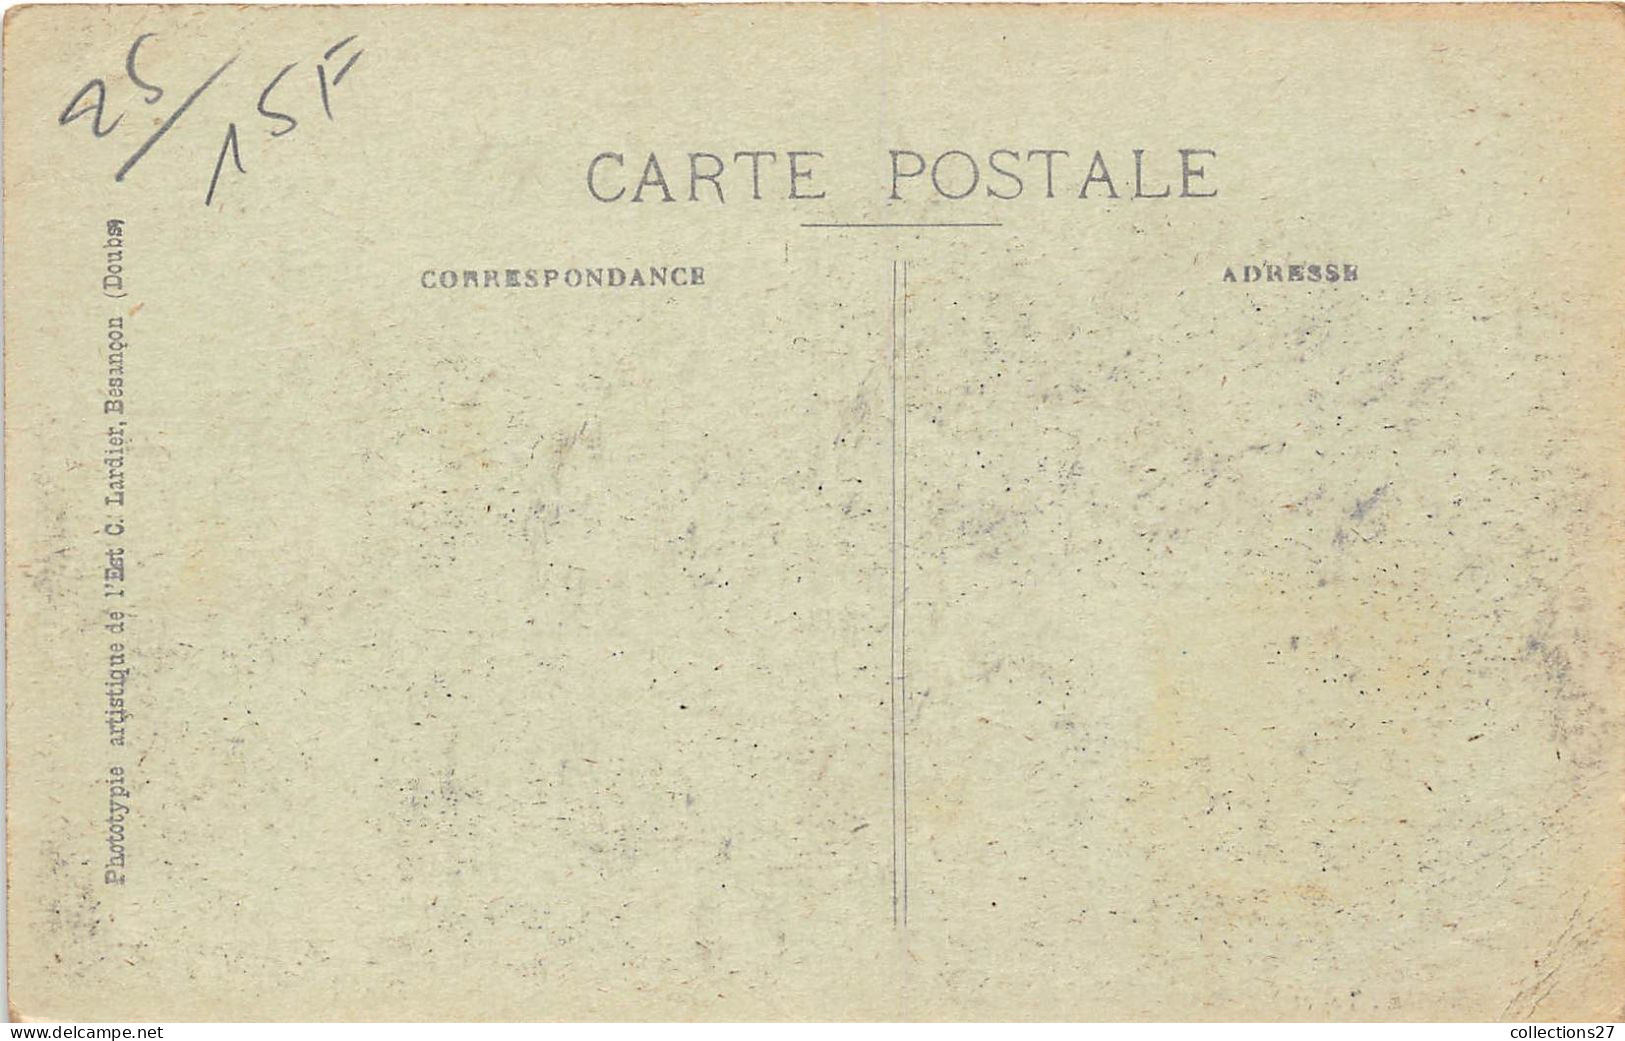 LOT DE 6000 CARTES POSTALES ANCIENNES FRANCE -DROUILLE- VILLES, VILLAGES UNIQUEMENT ( QUELQUES EXEMPLES ) - 500 Postkaarten Min.